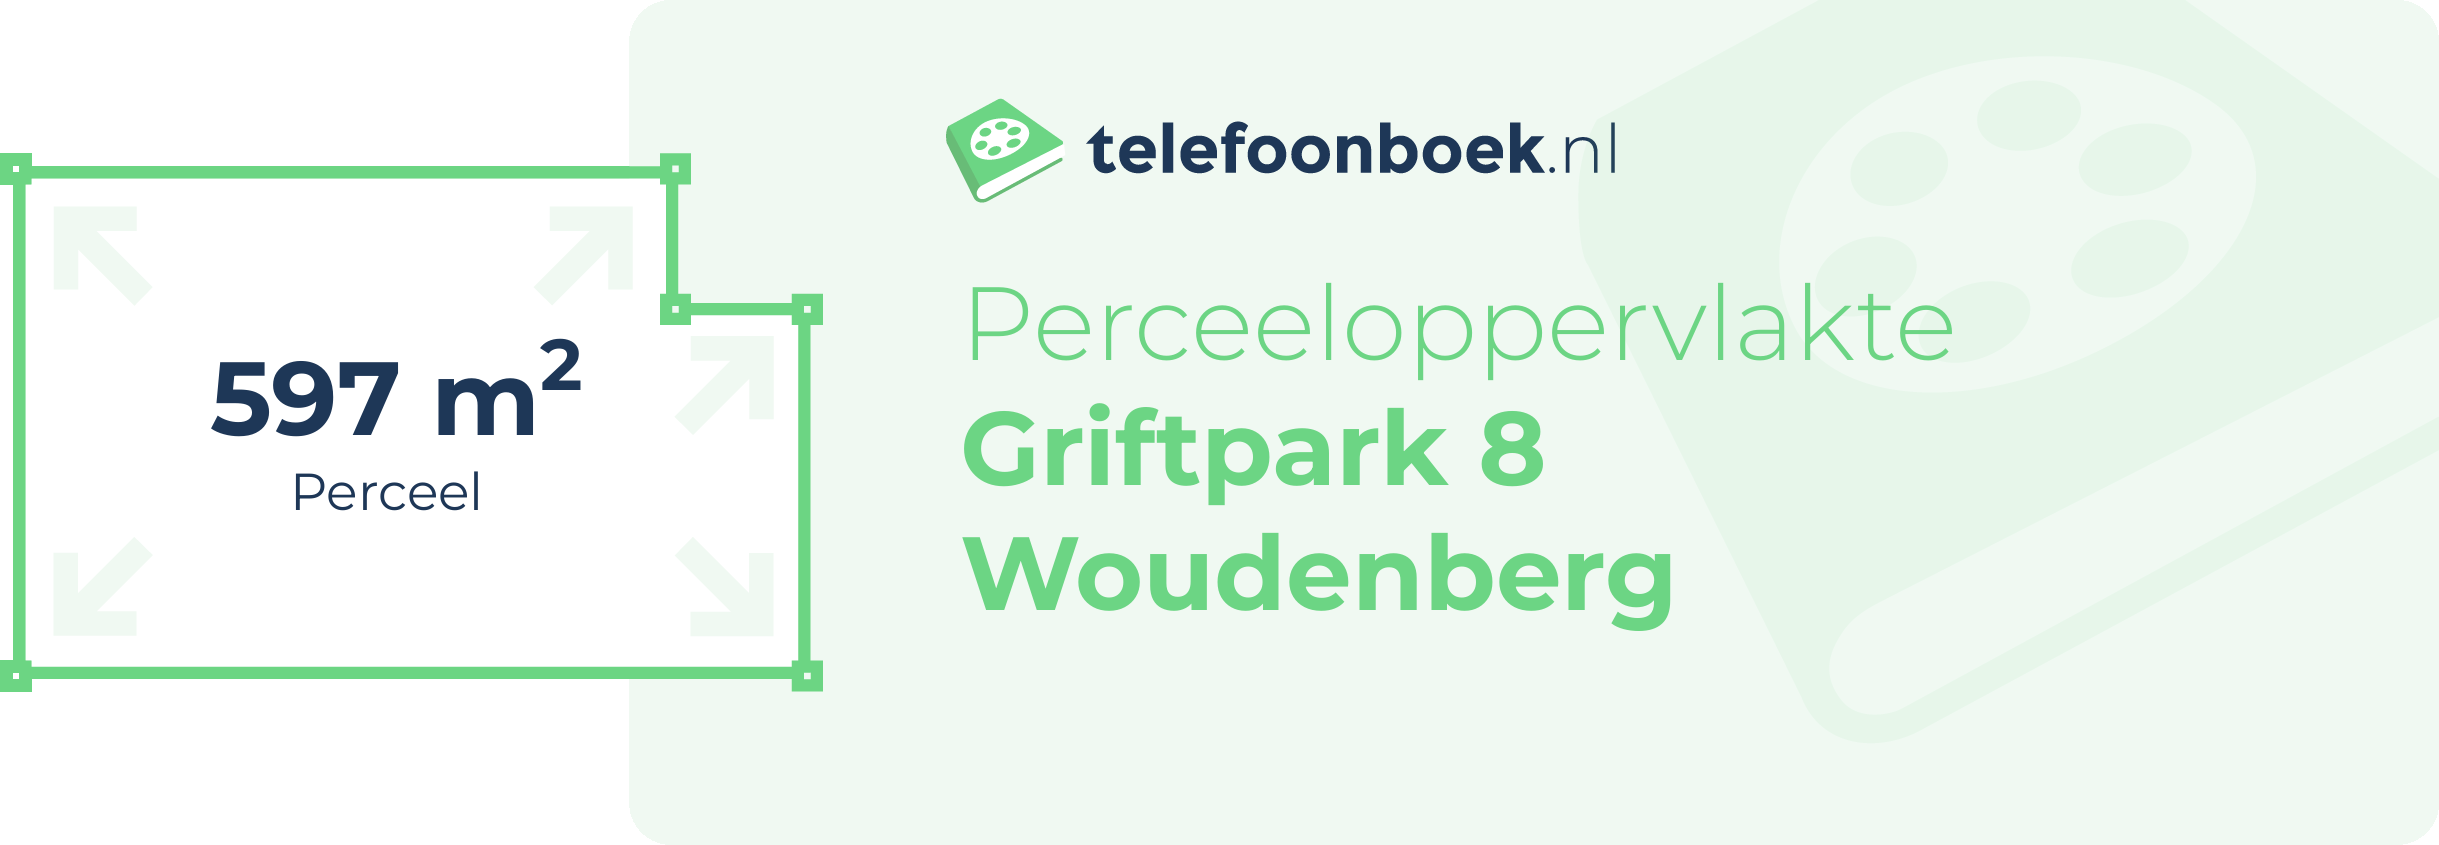 Perceeloppervlakte Griftpark 8 Woudenberg